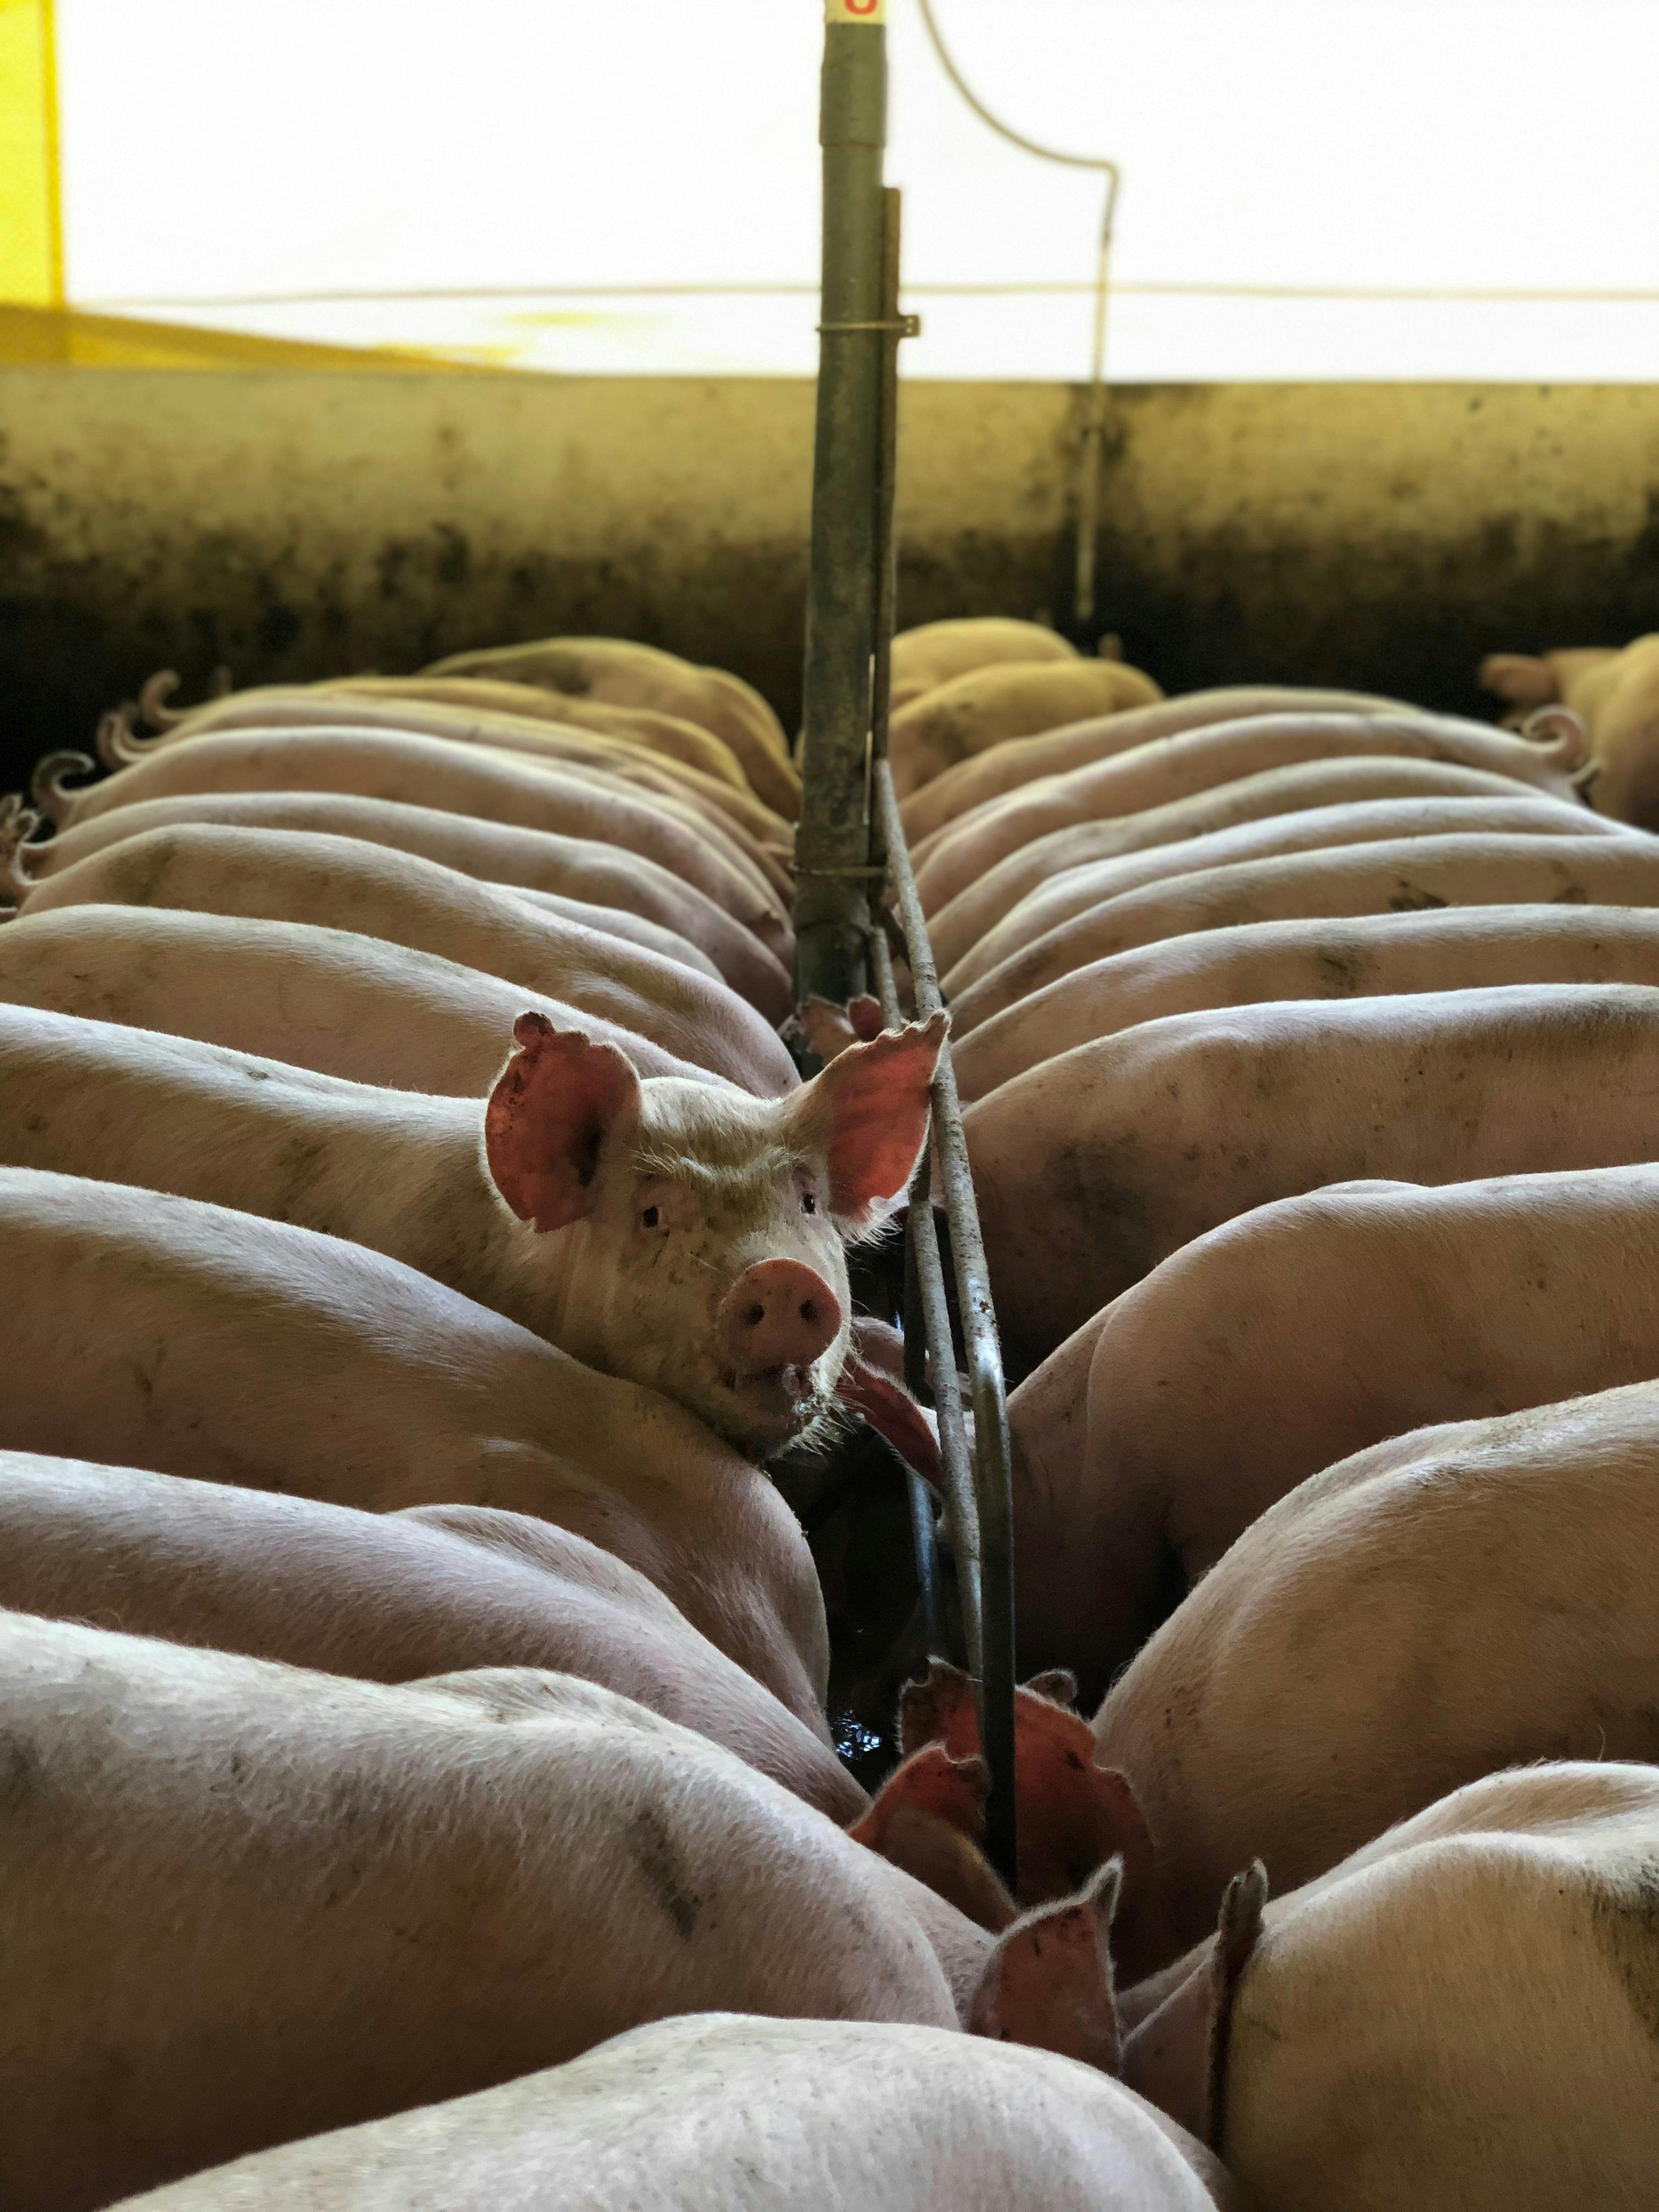 pigs feeding in farm barn